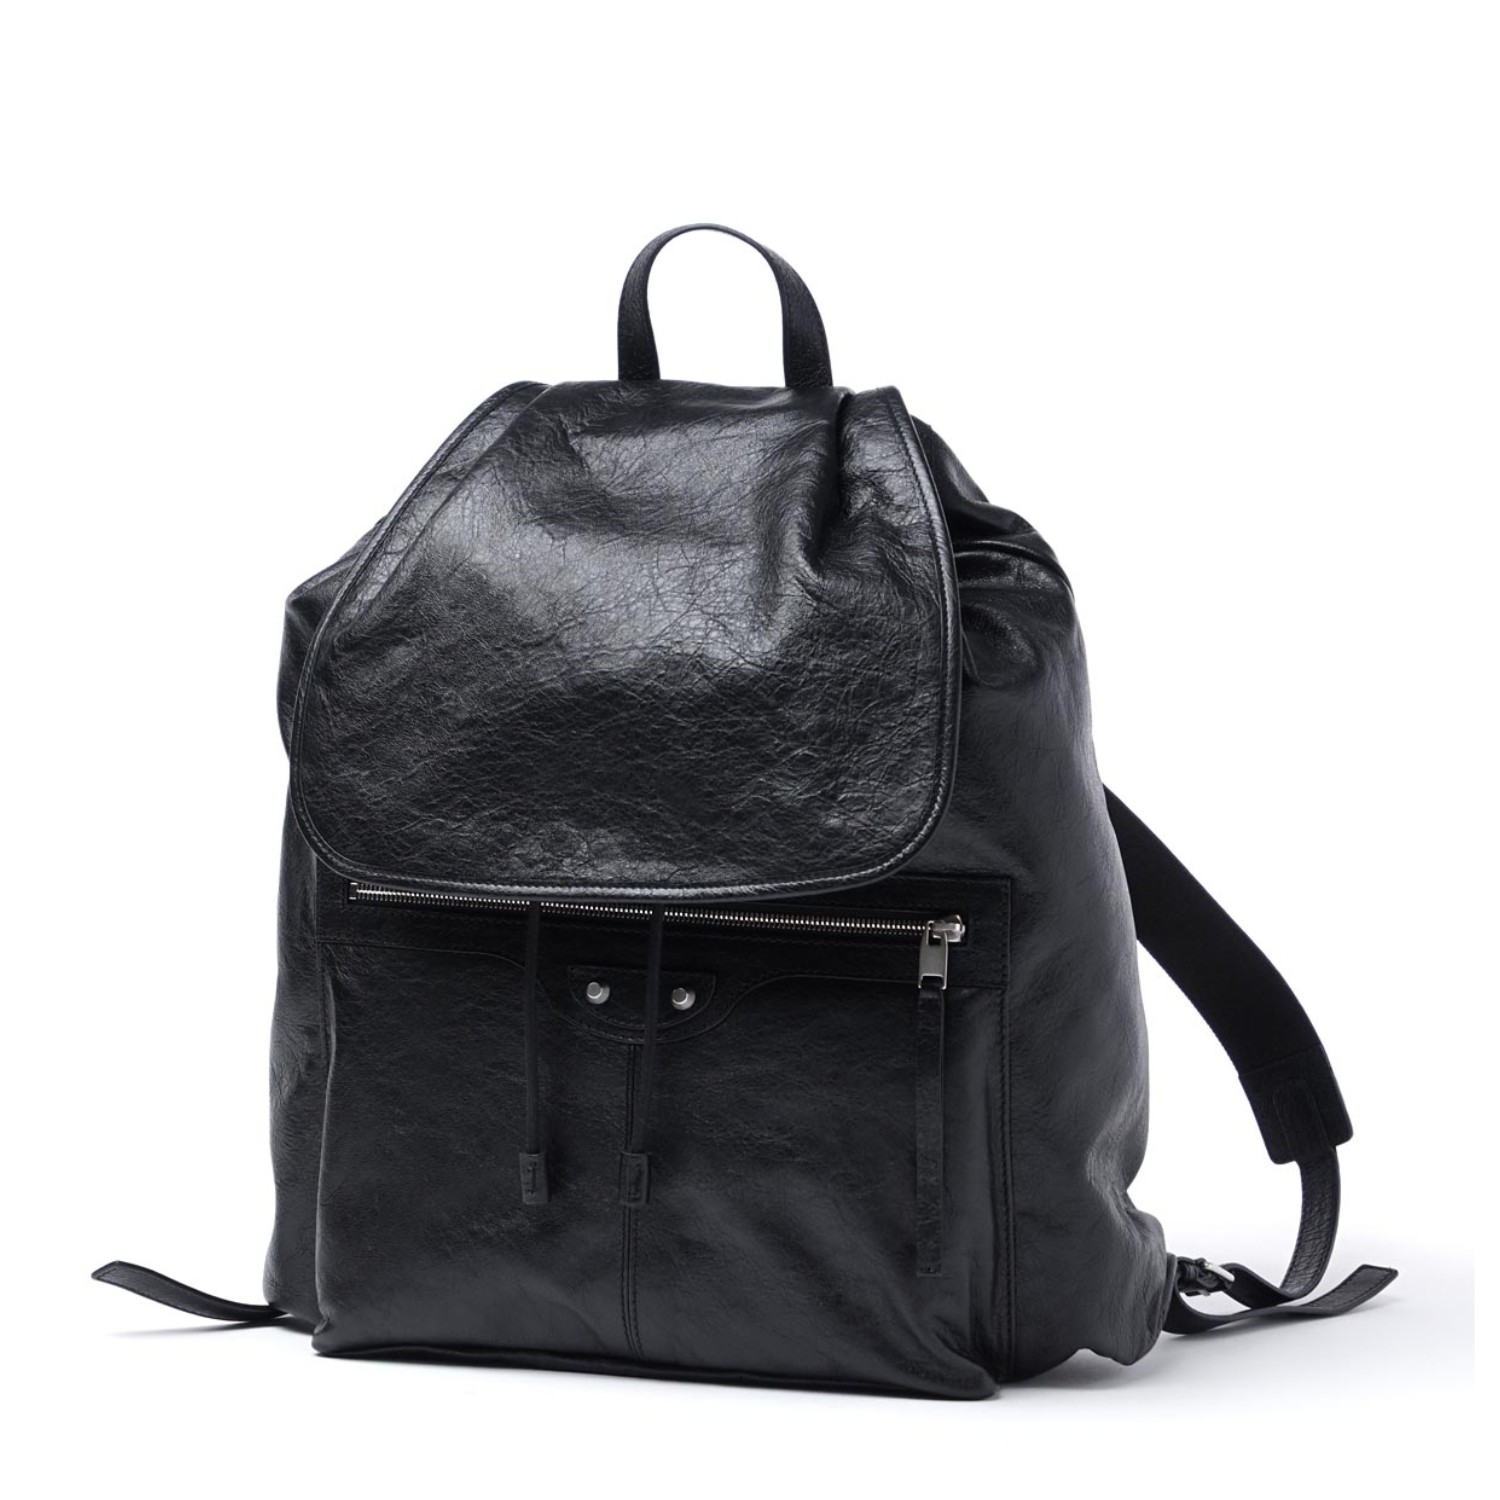 【包邮包税】balenciaga/巴黎世家 男士黑色皮革双肩包backpacks